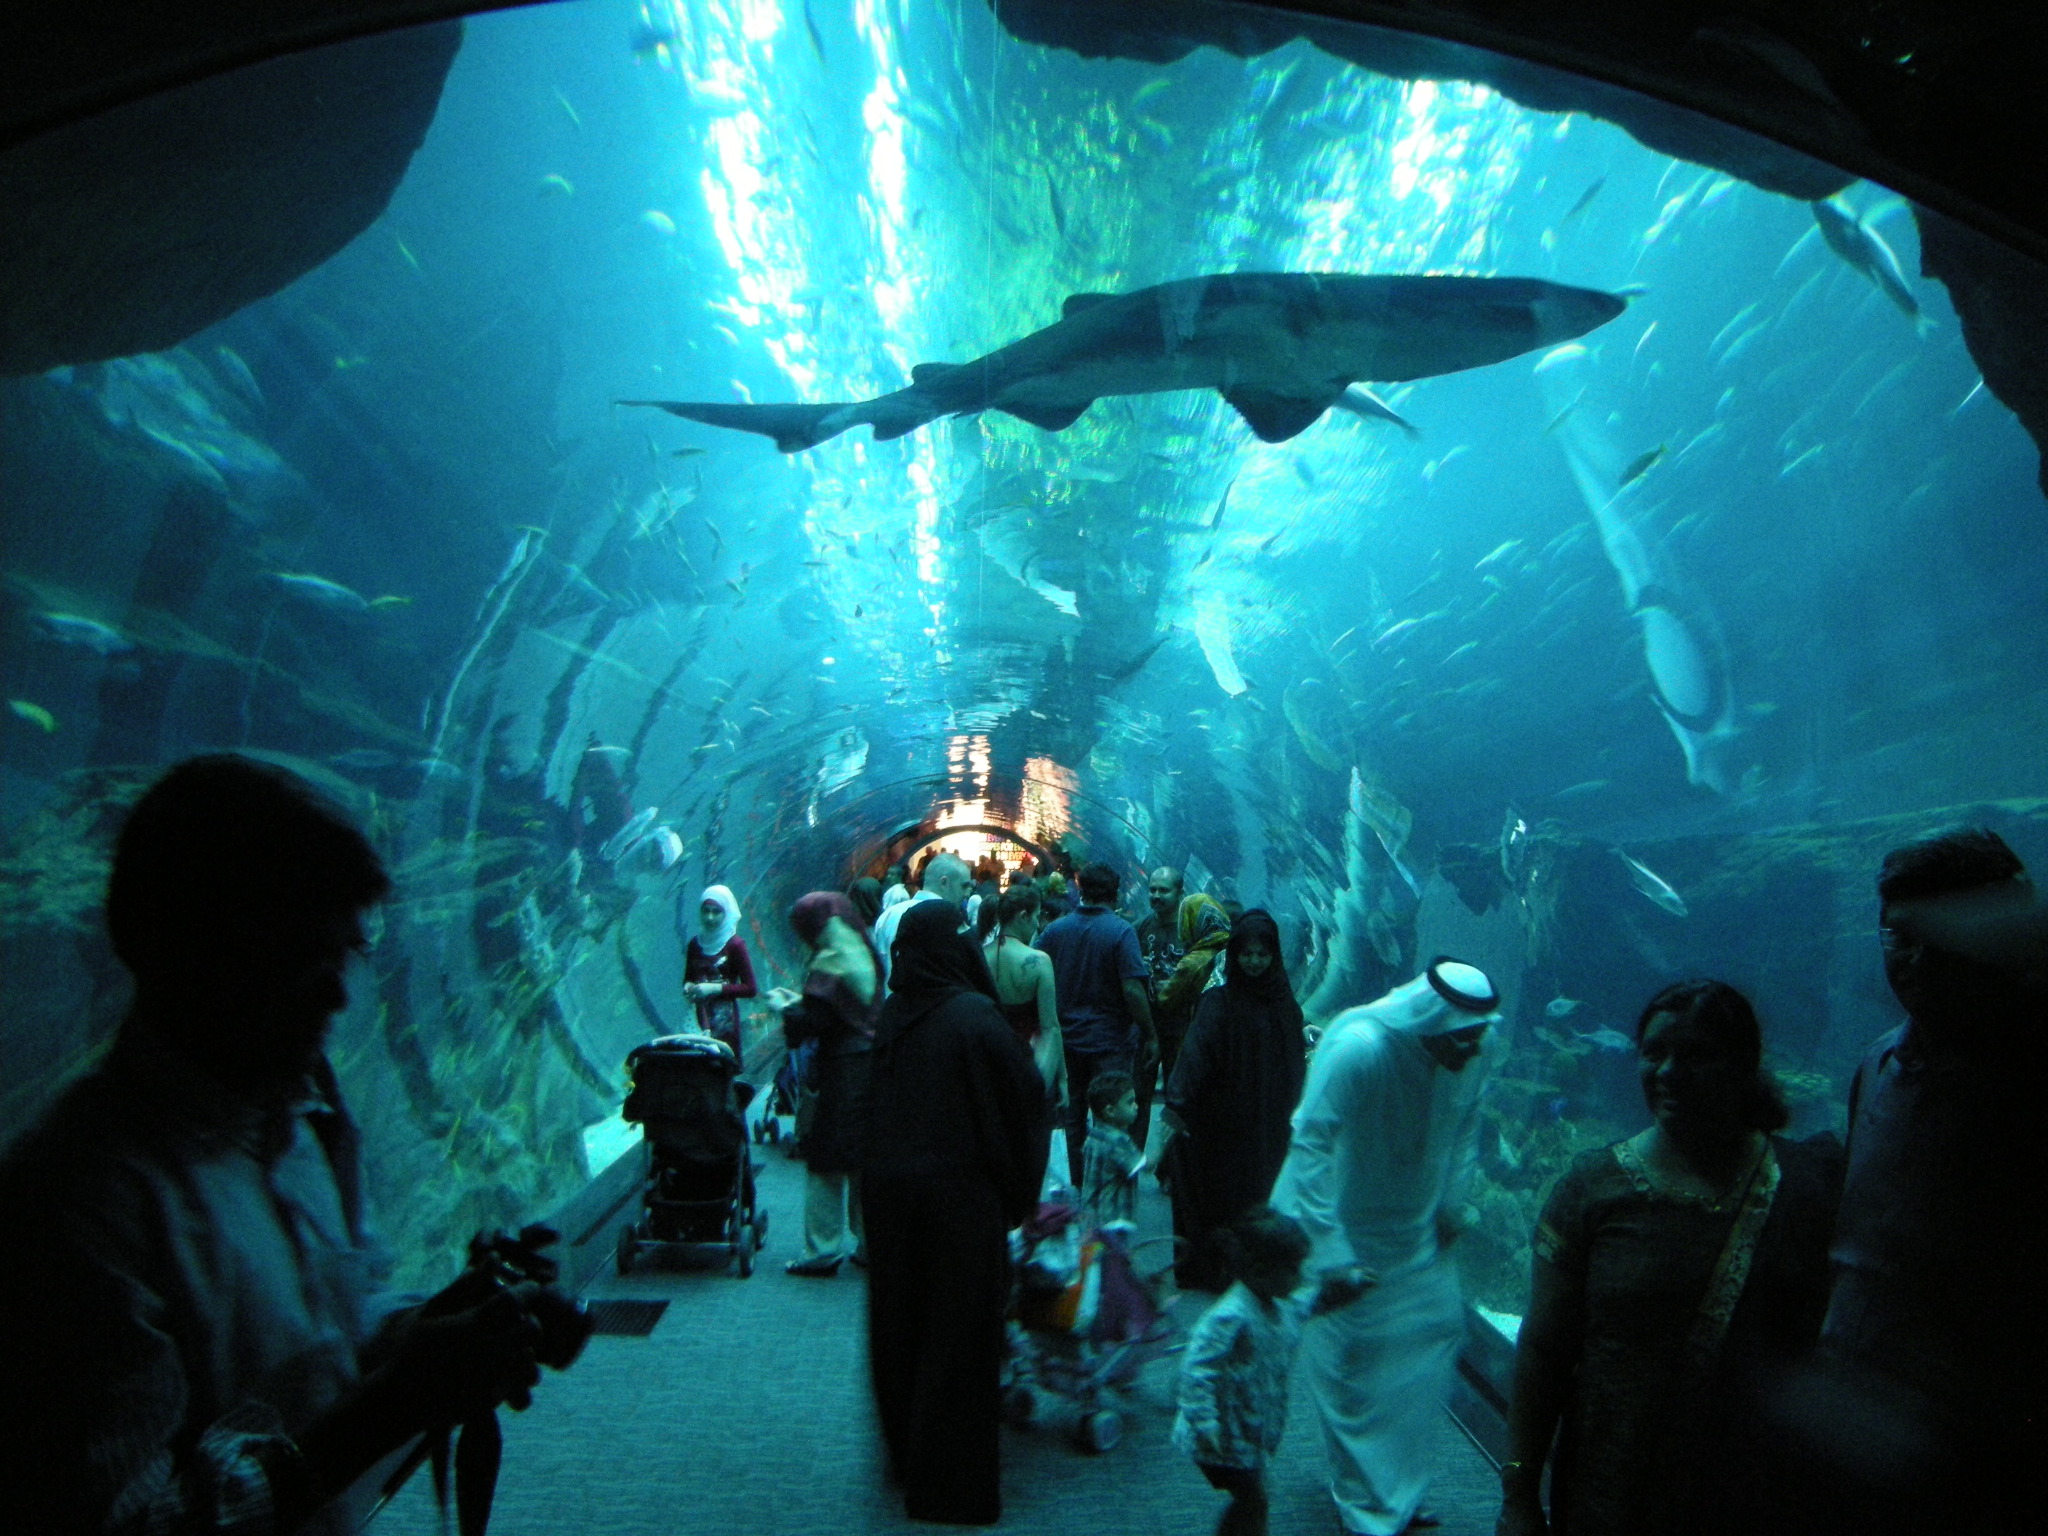 Dubai Aquarium, located in Dubai Best Aquariums In The World